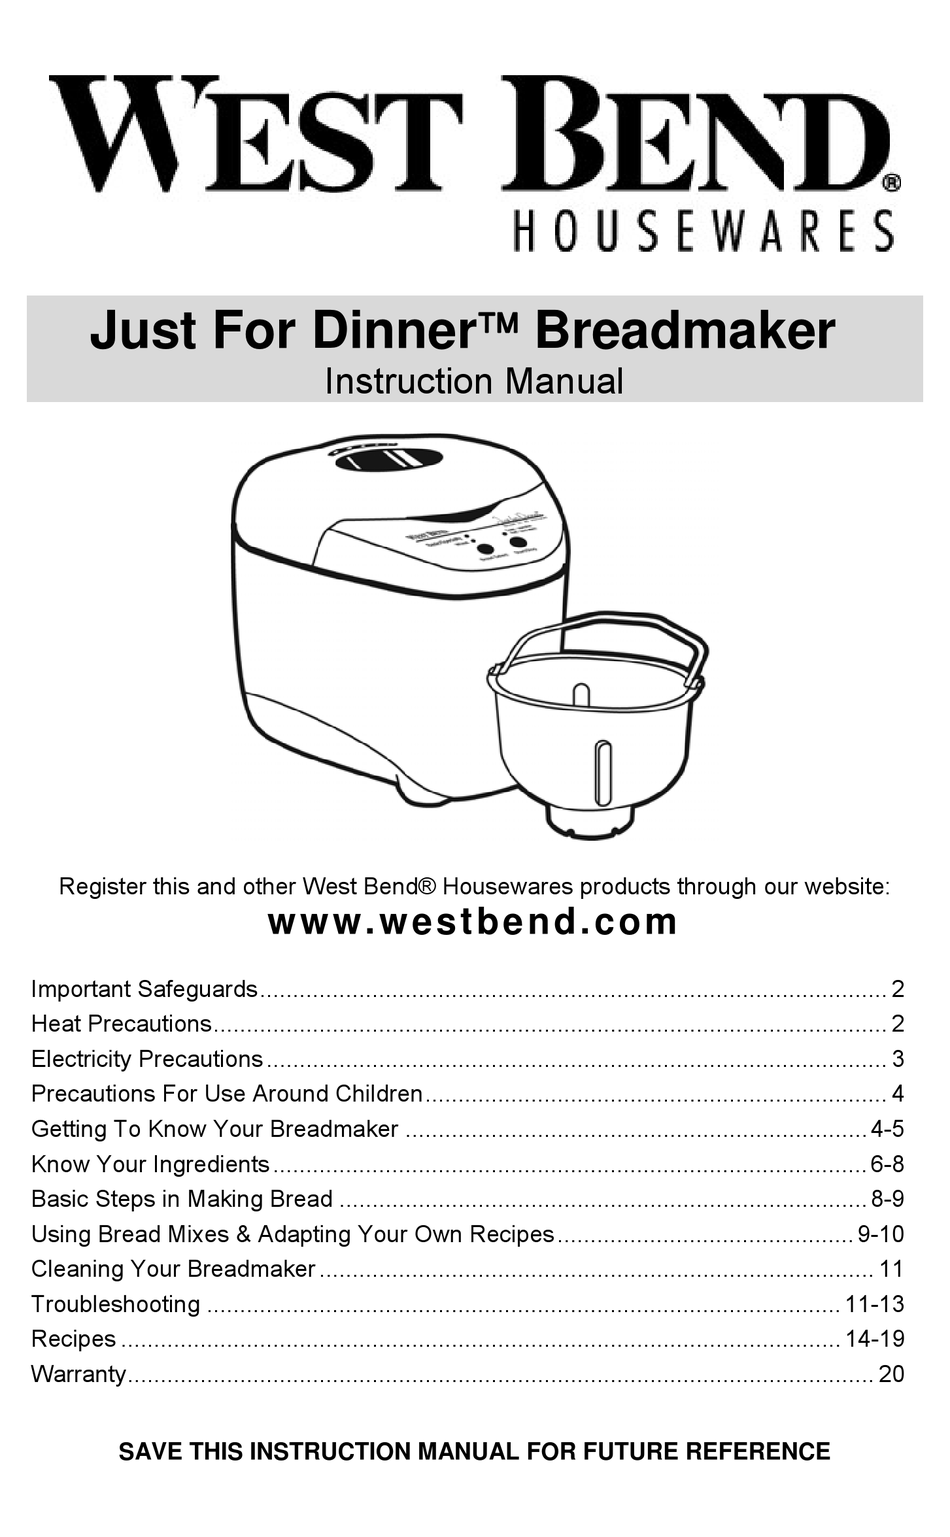 WEST BEND JUST FOR DINNER BREADMAKER INSTRUCTION MANUAL Pdf Download